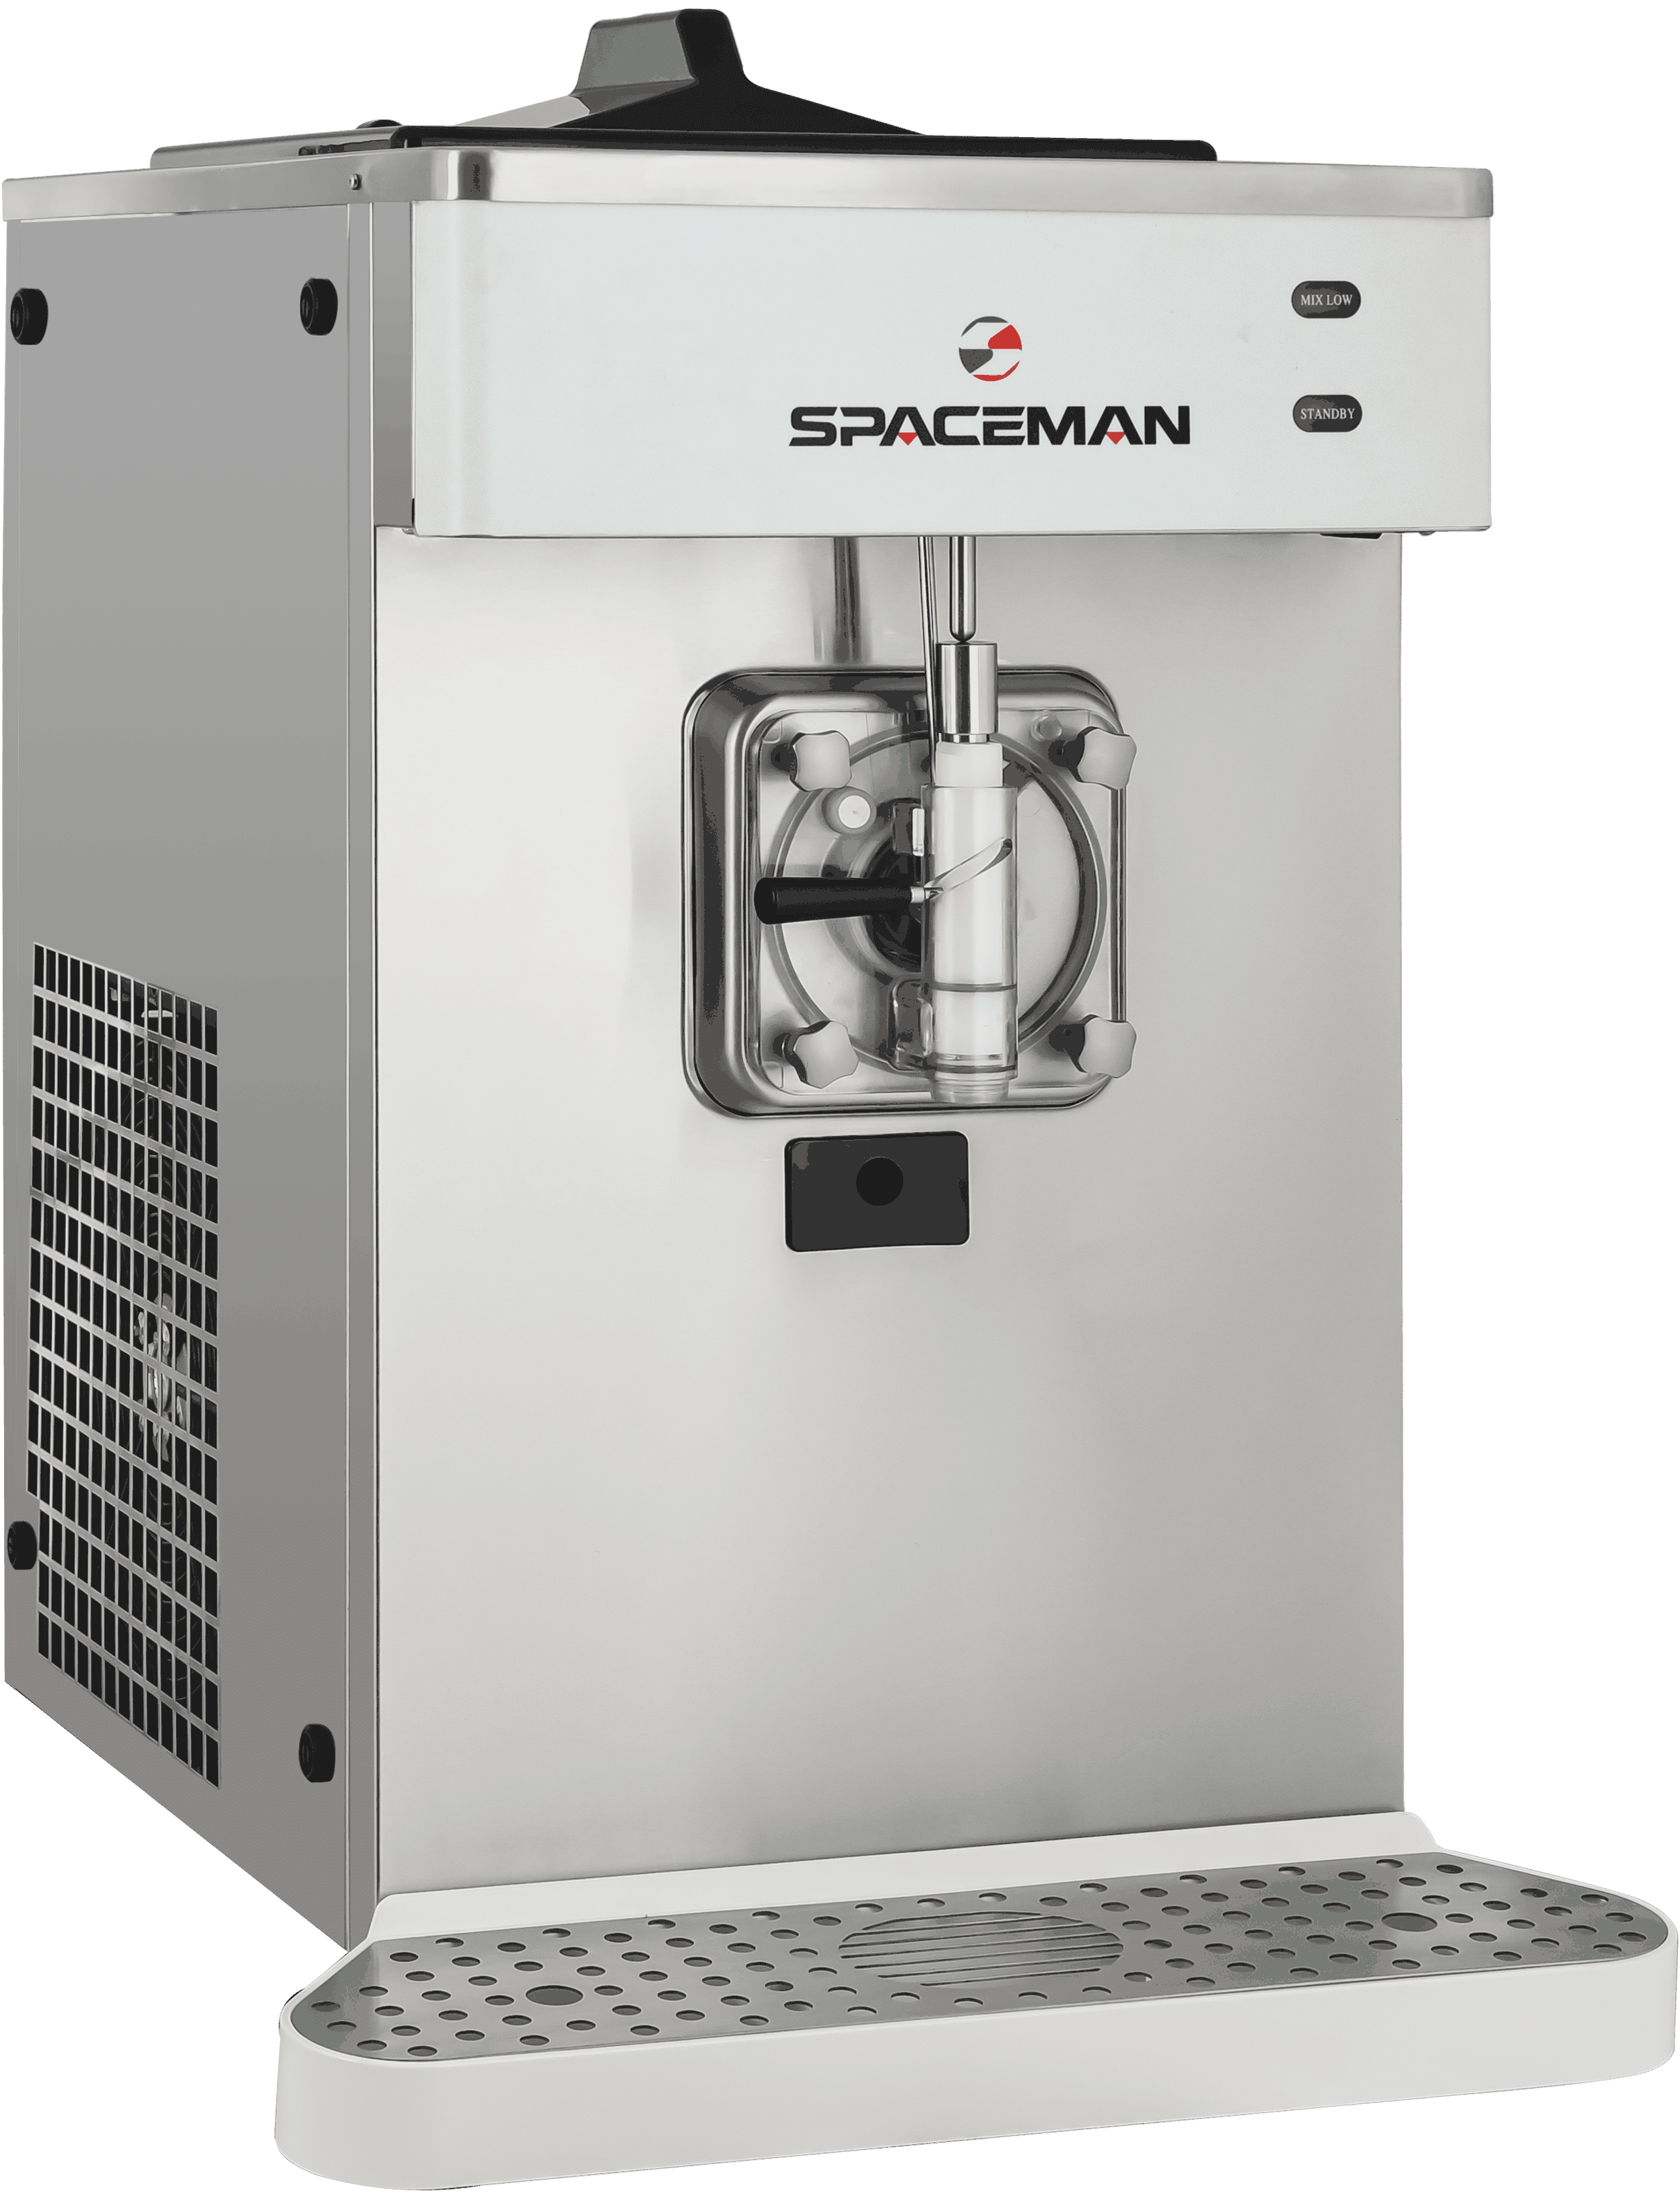 Spaceman 6250-C Twin Twist Soft Serve Machine